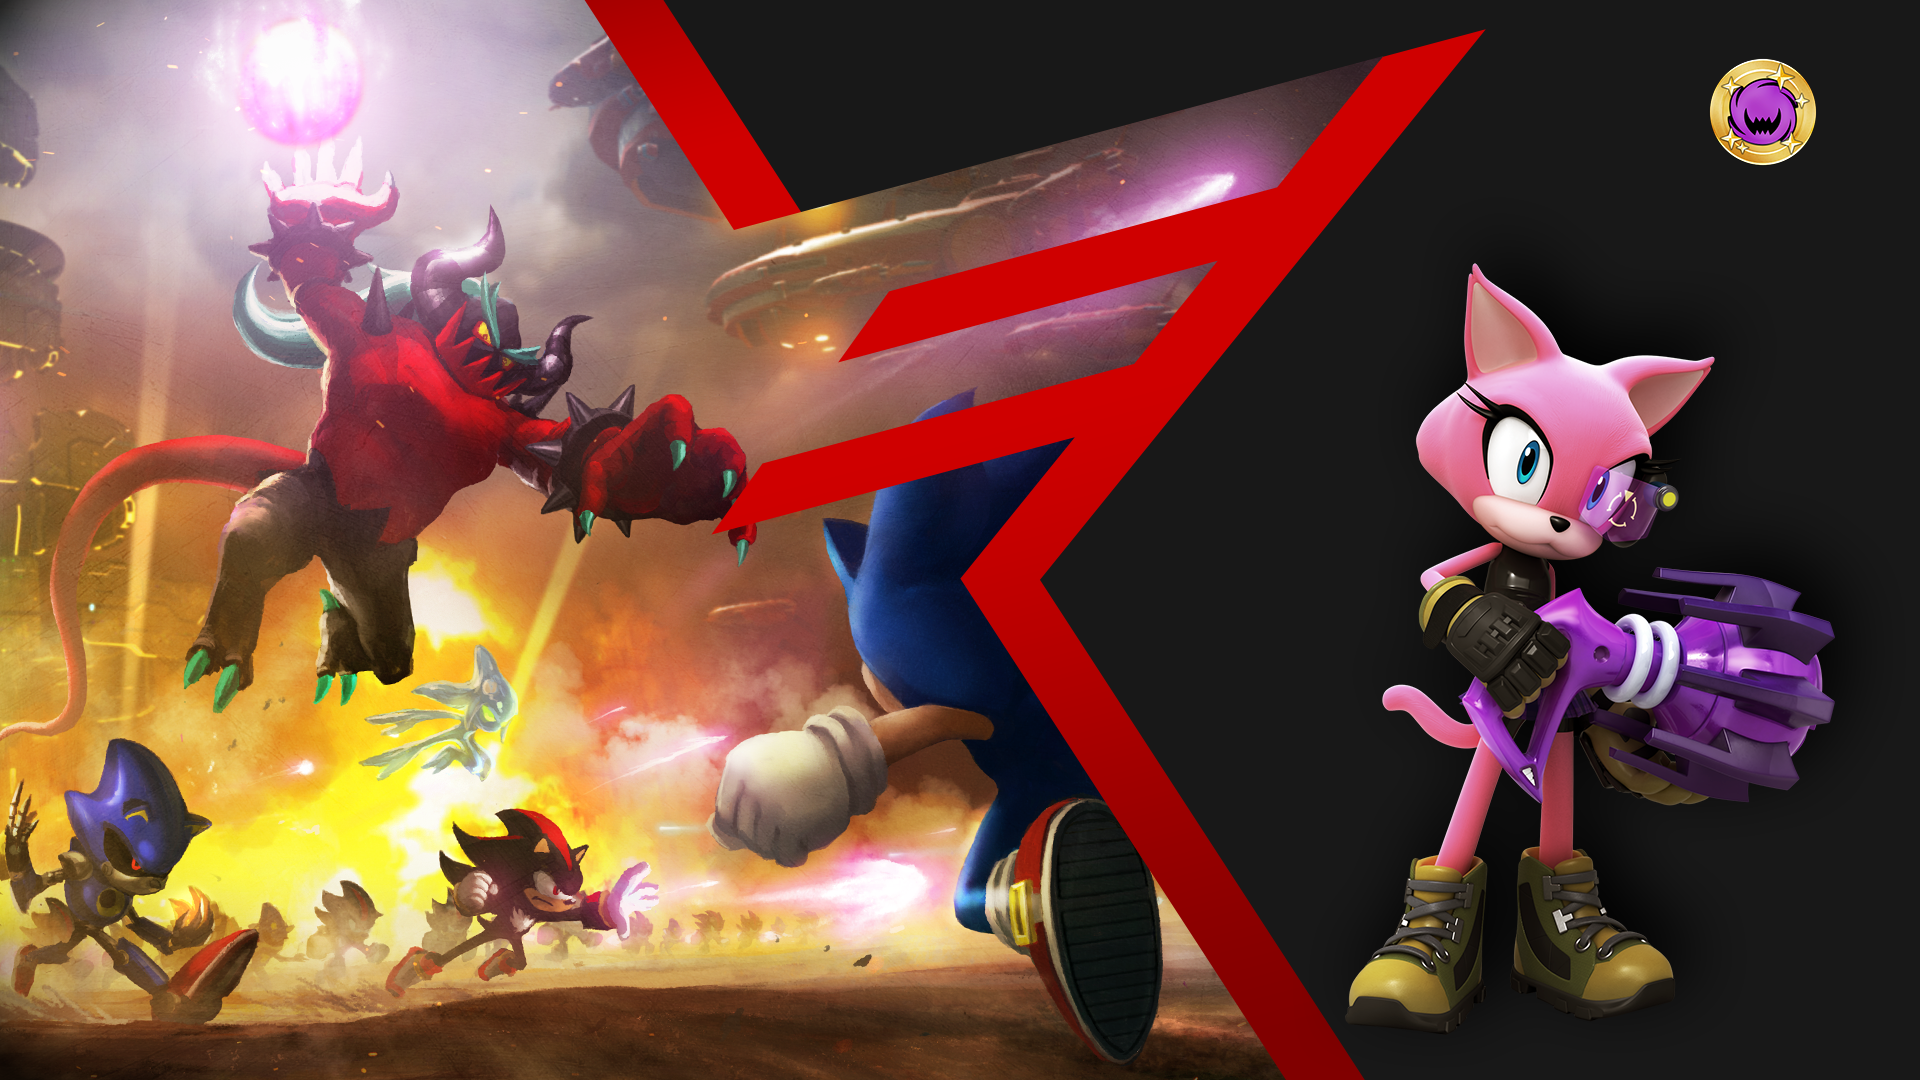 Icon for Sonic Battler